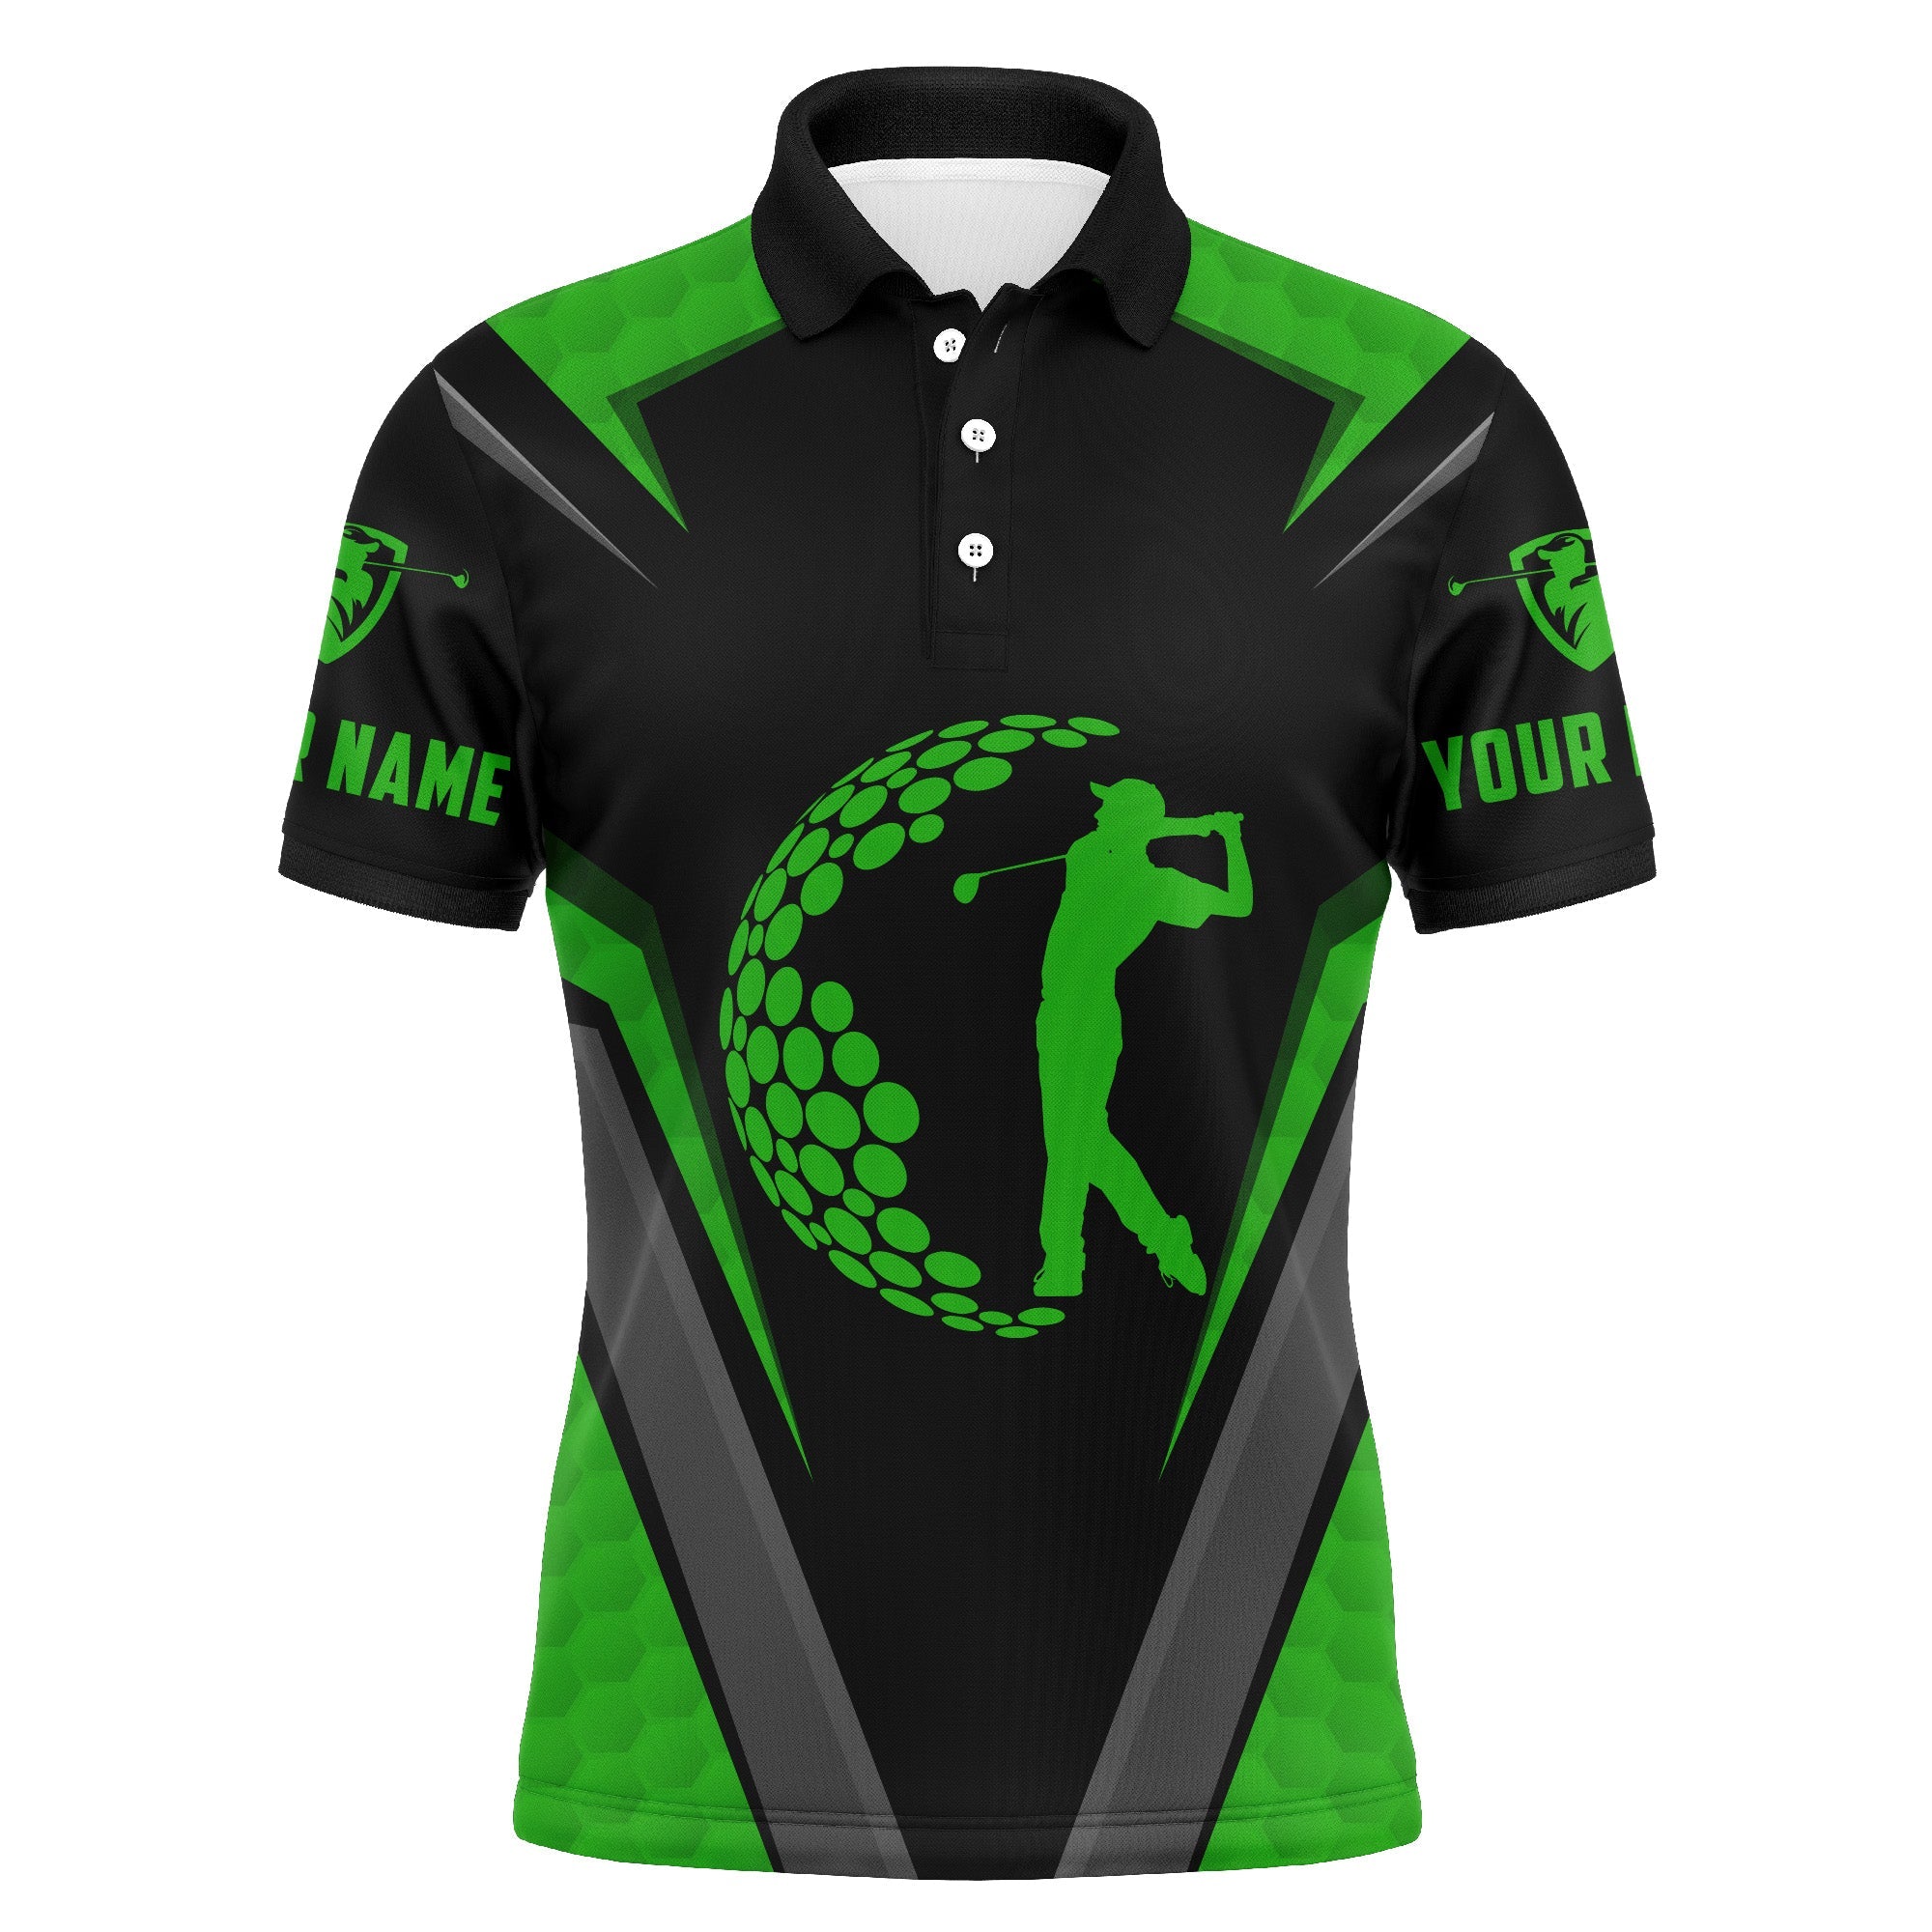 Golf Men Polo Shirt - Golfing Golf Ball Custom Name Green Black Apparel - Personalized Gift For Golf Lover, Team, Golfer, Best Golf Shirt For Men